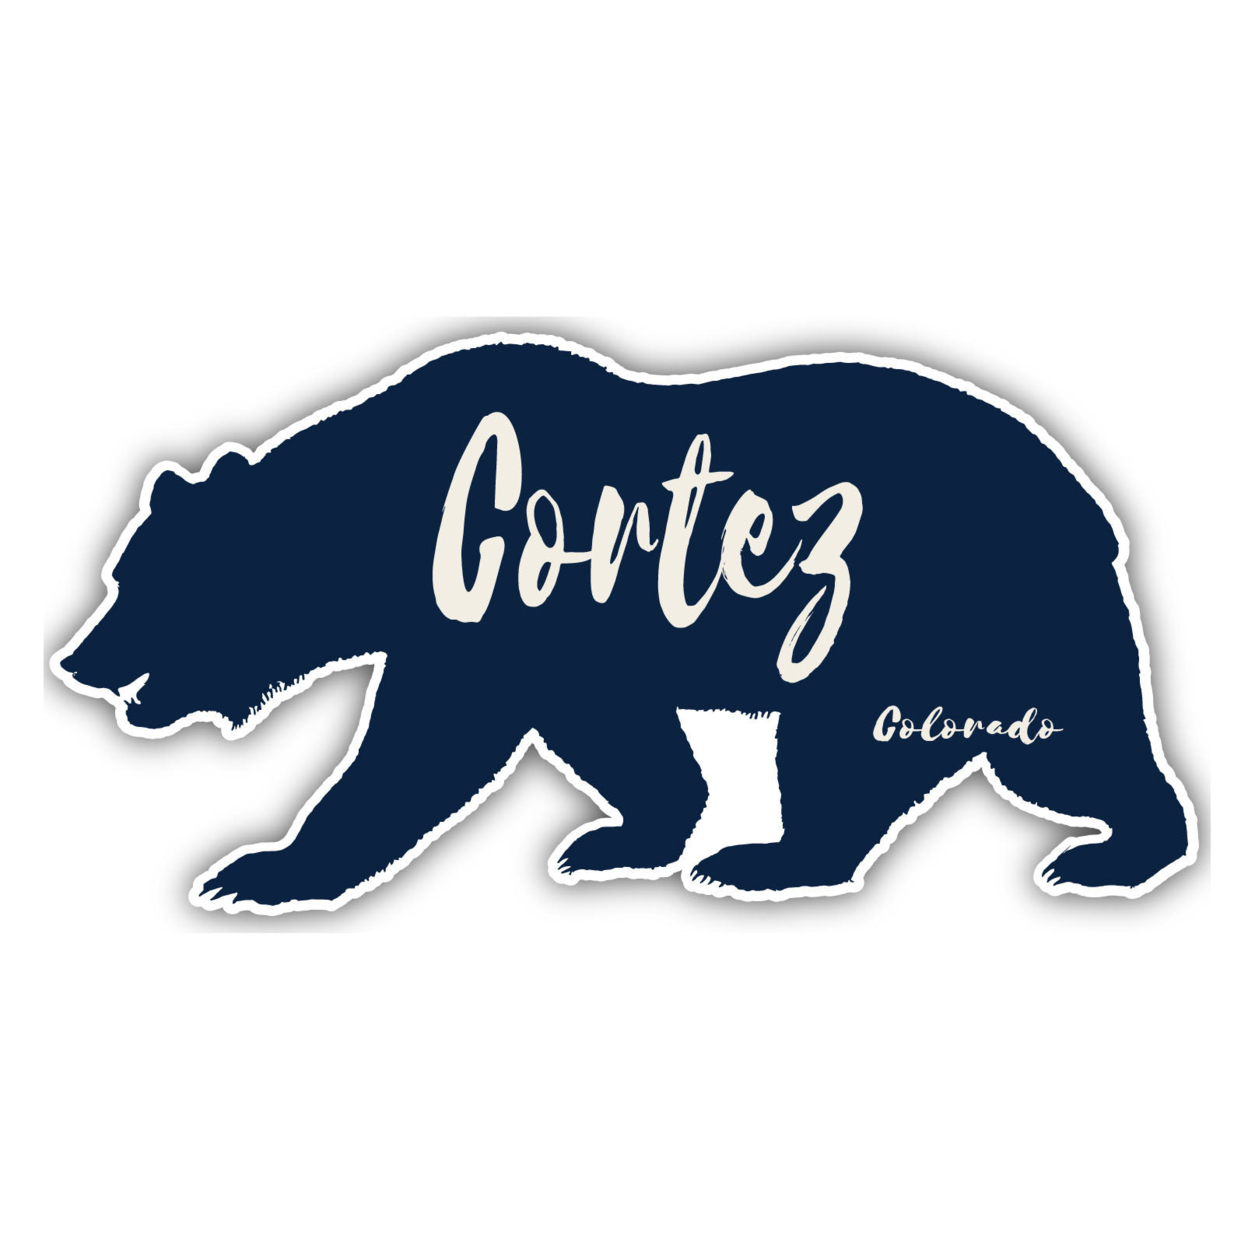 Cortez Colorado Souvenir Decorative Stickers (Choose Theme And Size) - 4-Pack, 2-Inch, Tent